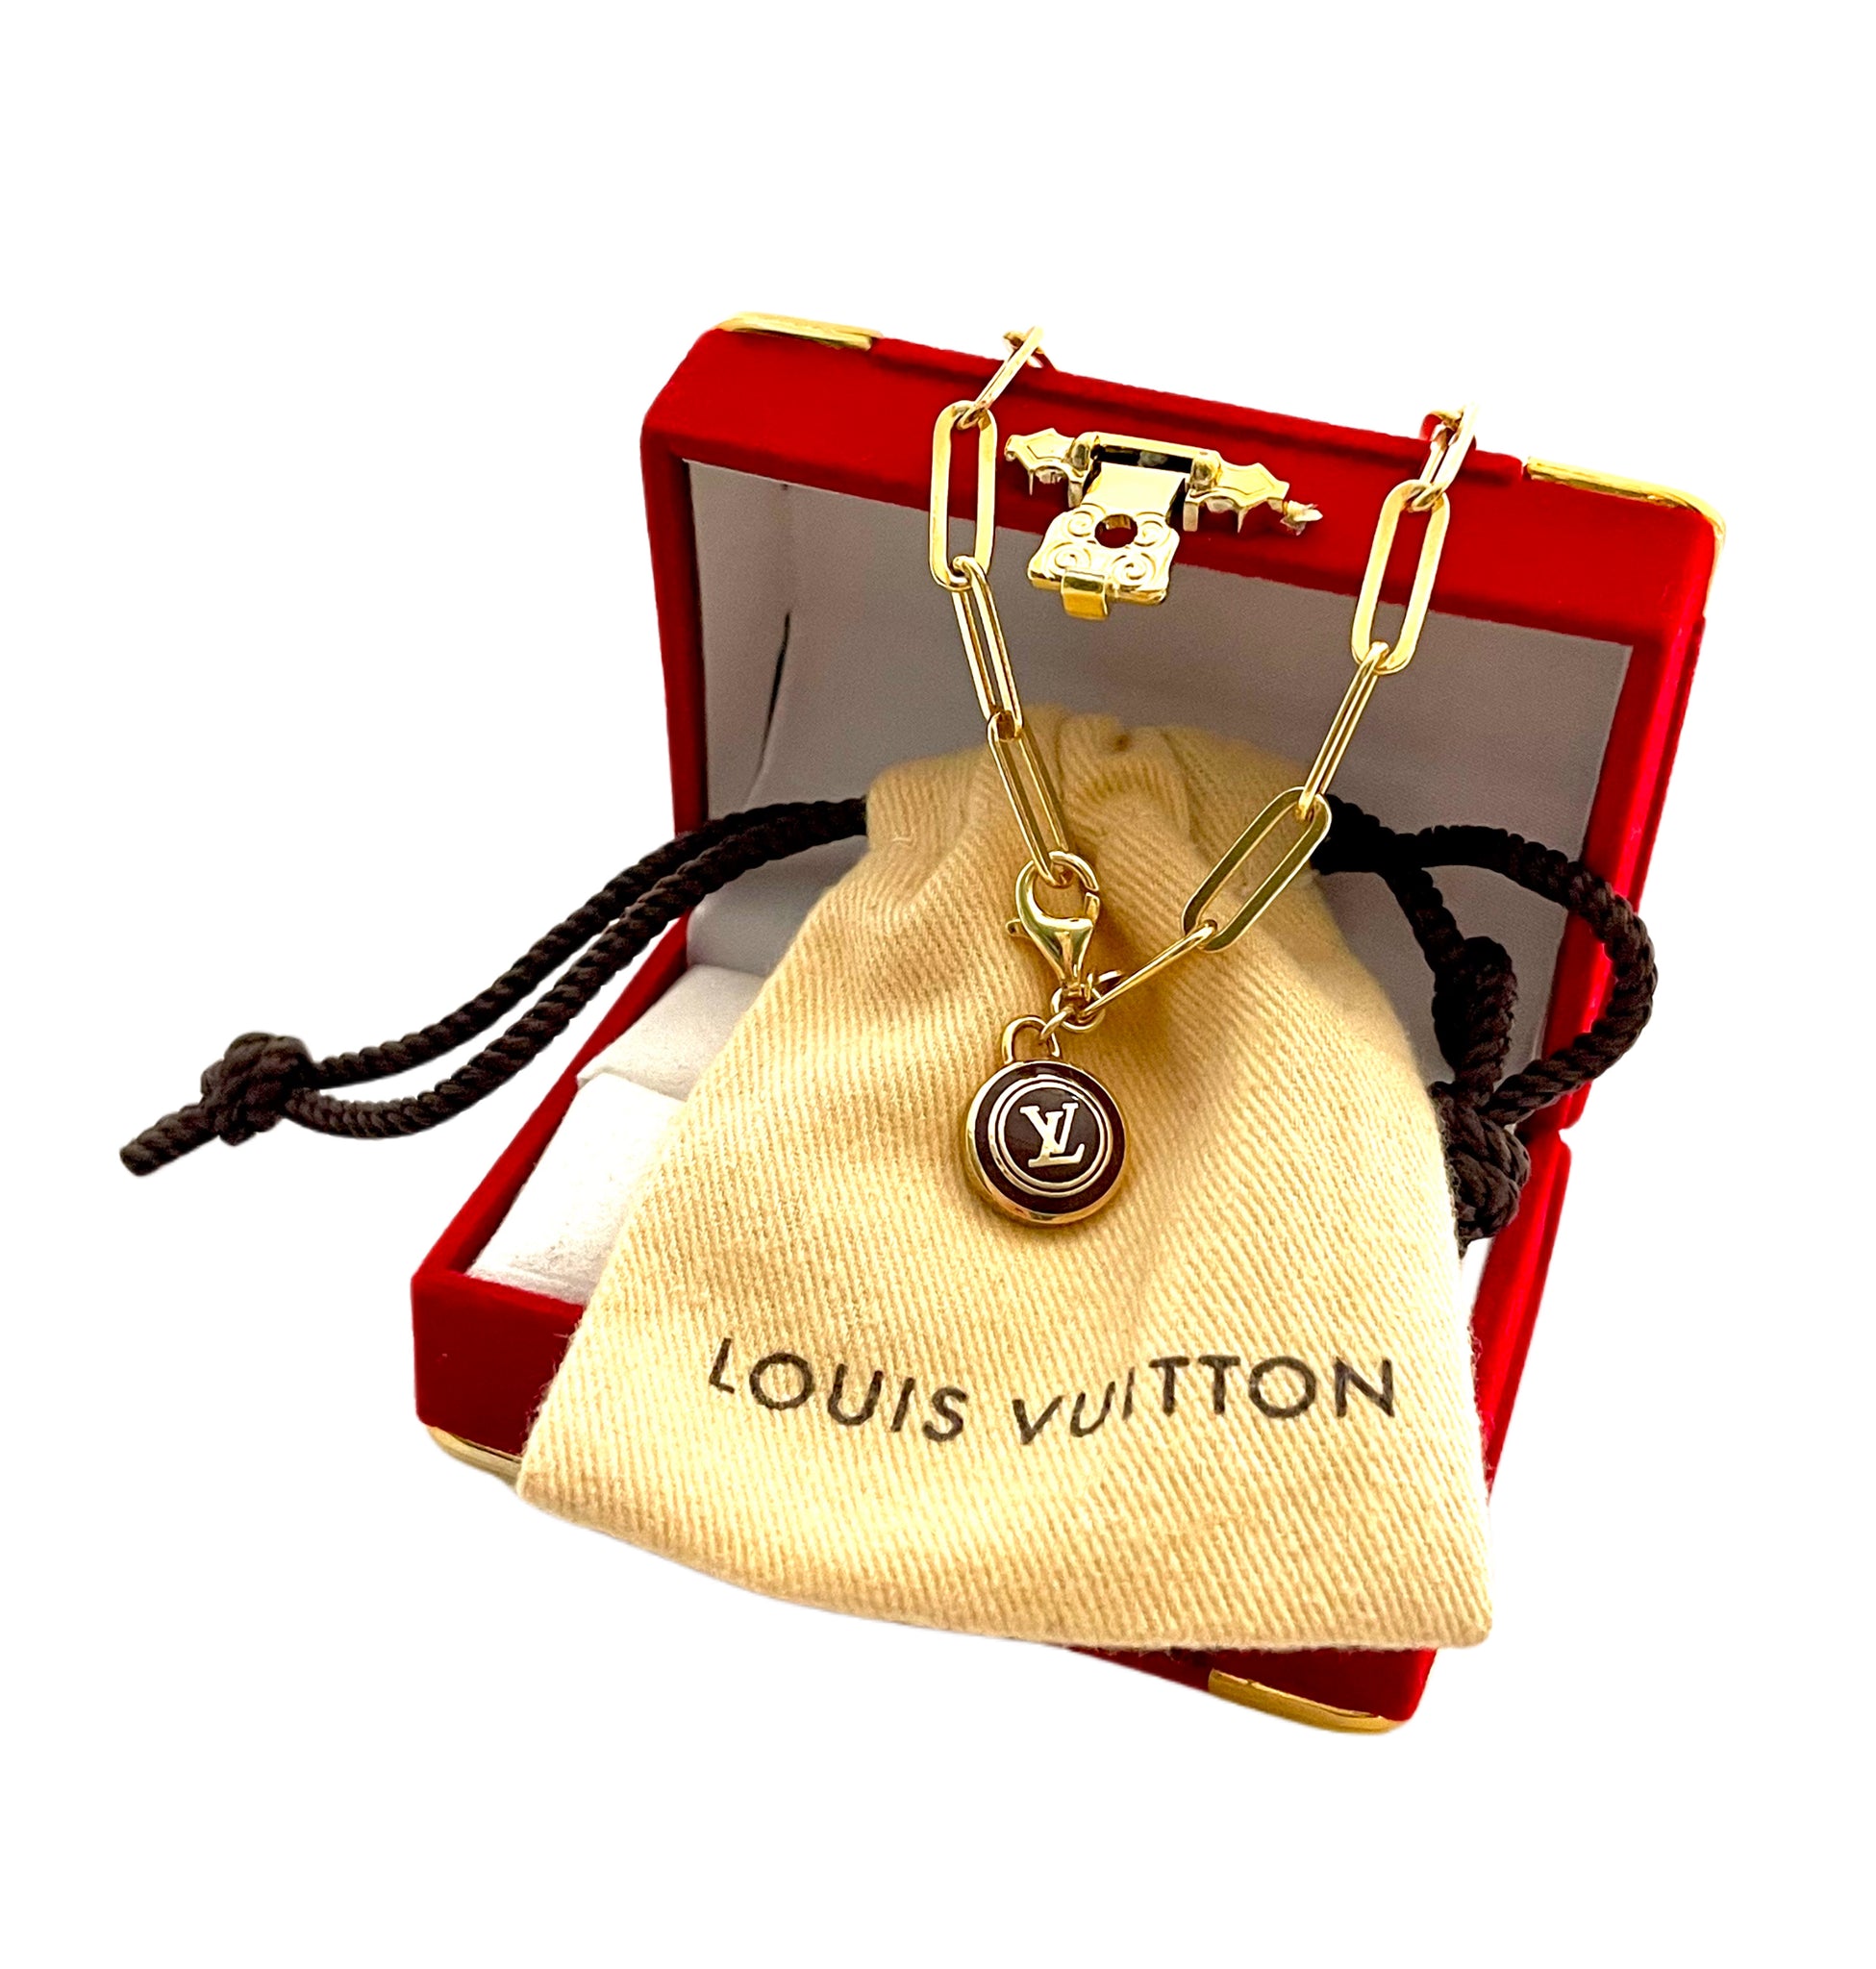 Vintage Reworked Louis Vuitton Charm Keychain Gold Silver Gems